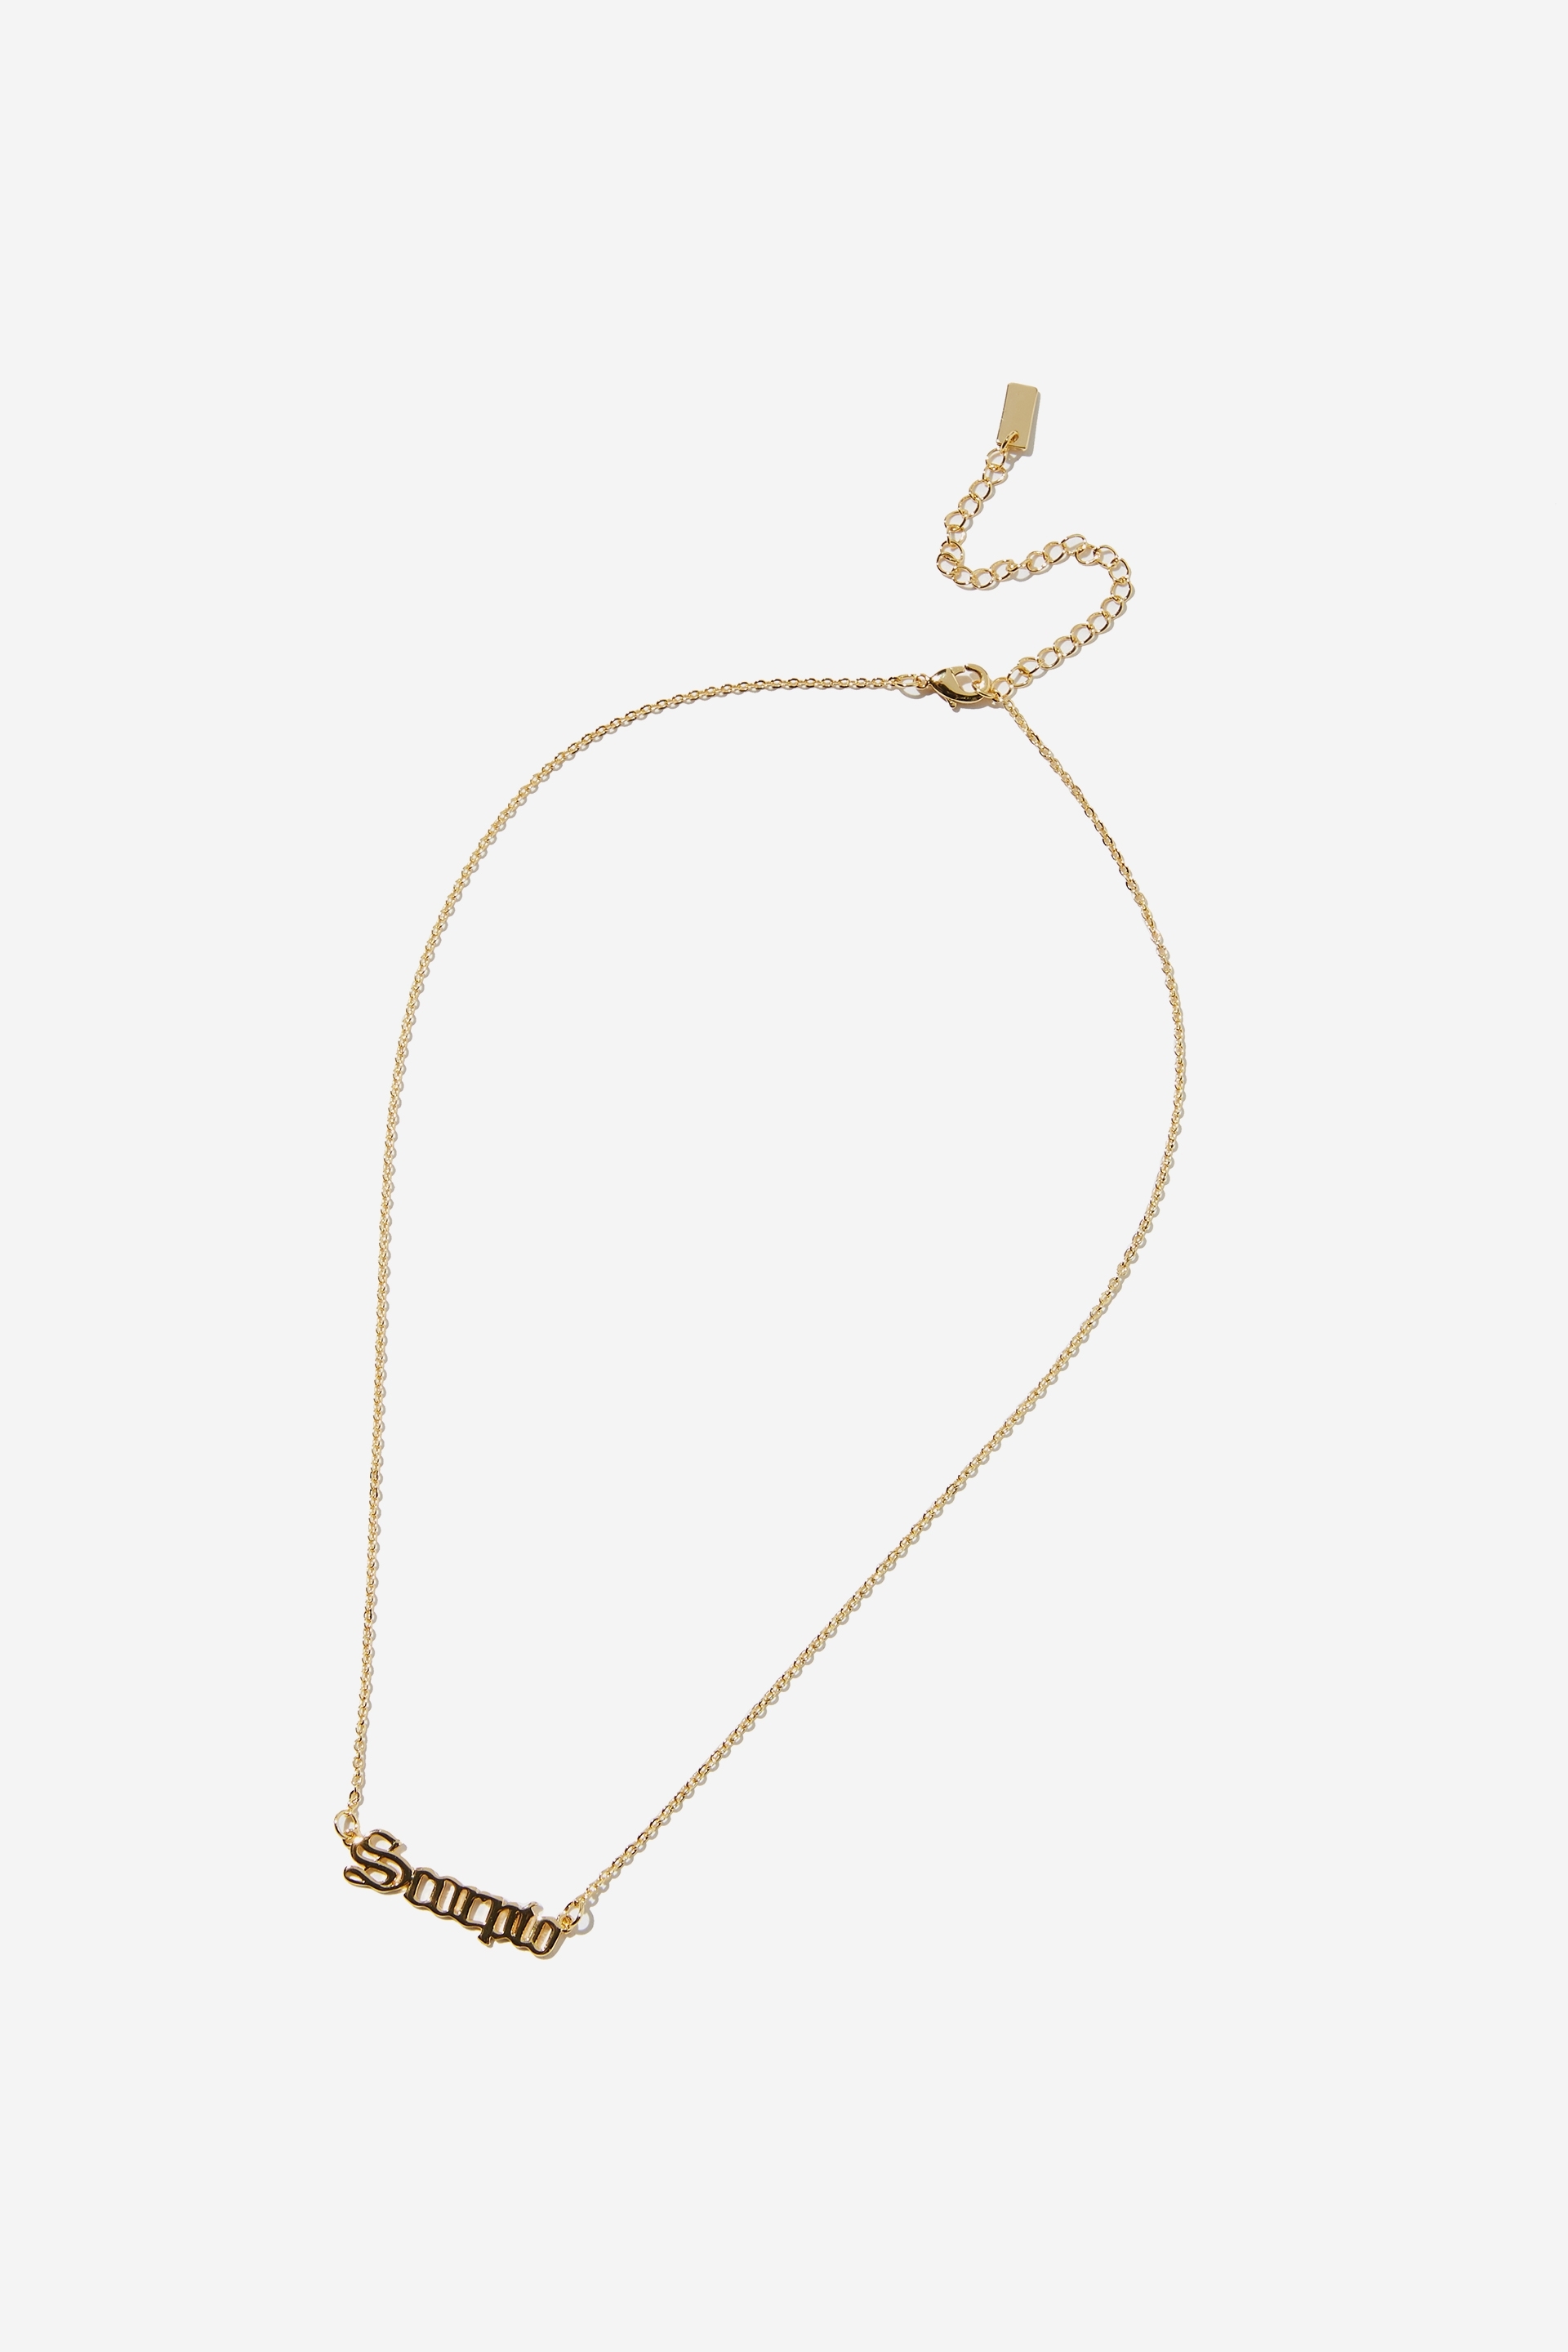 Rubi - Premium Pendant Necklace - Gold plated scorpio